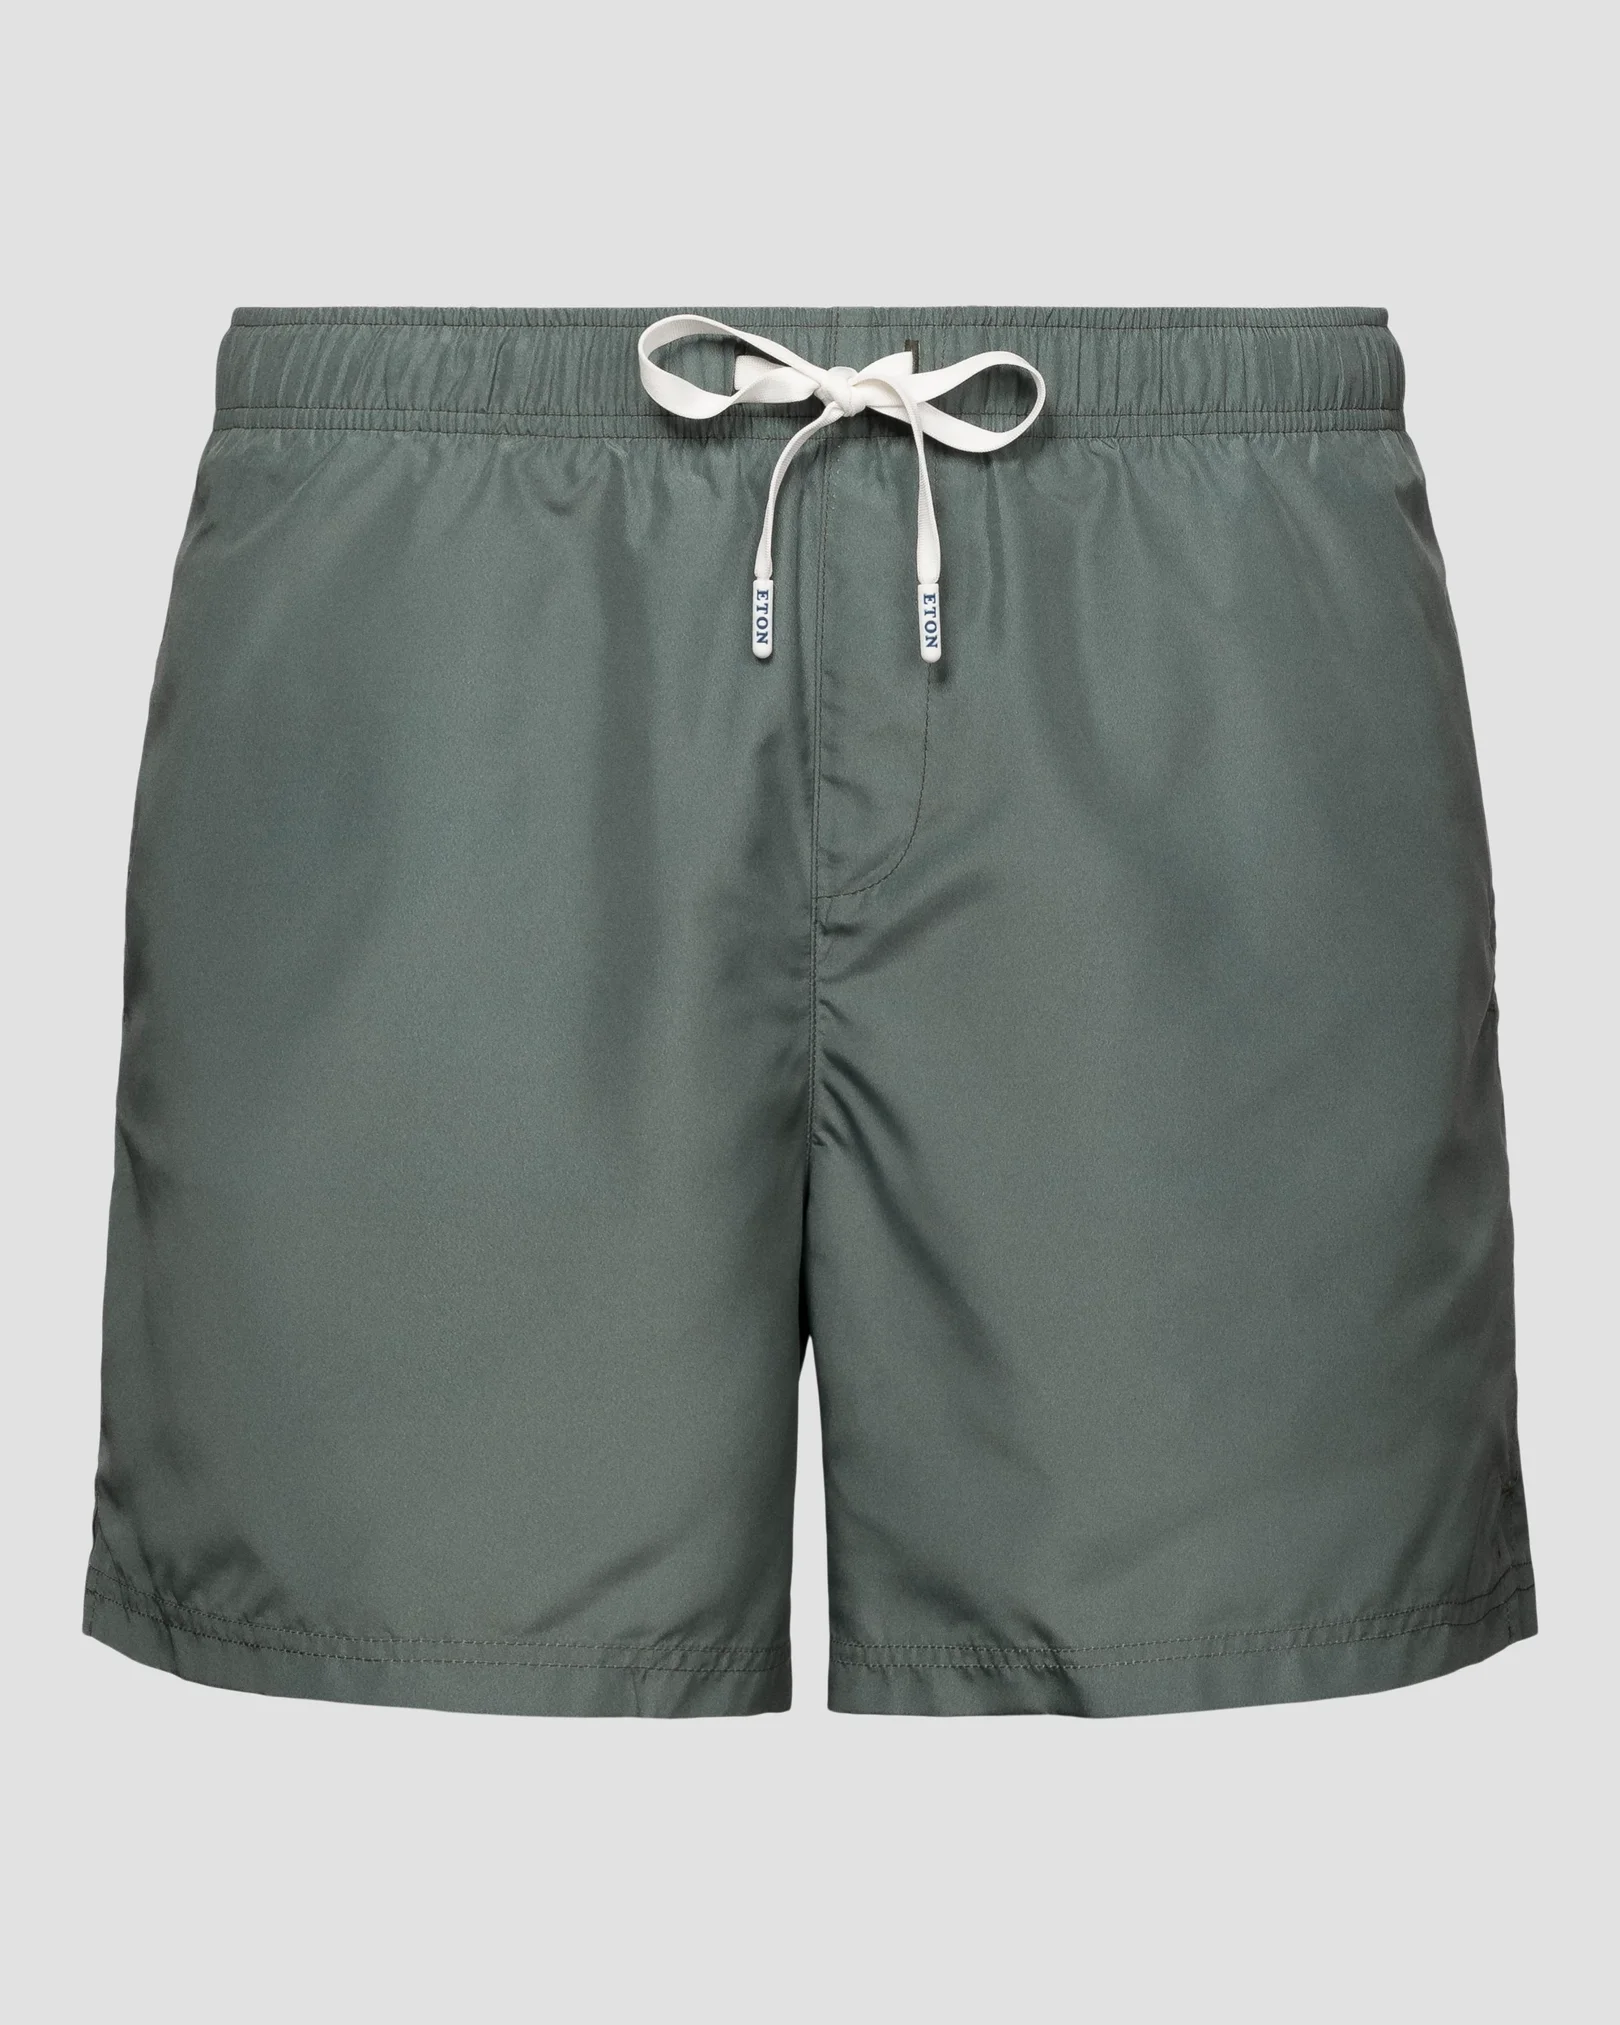 Green Swimming Shorts